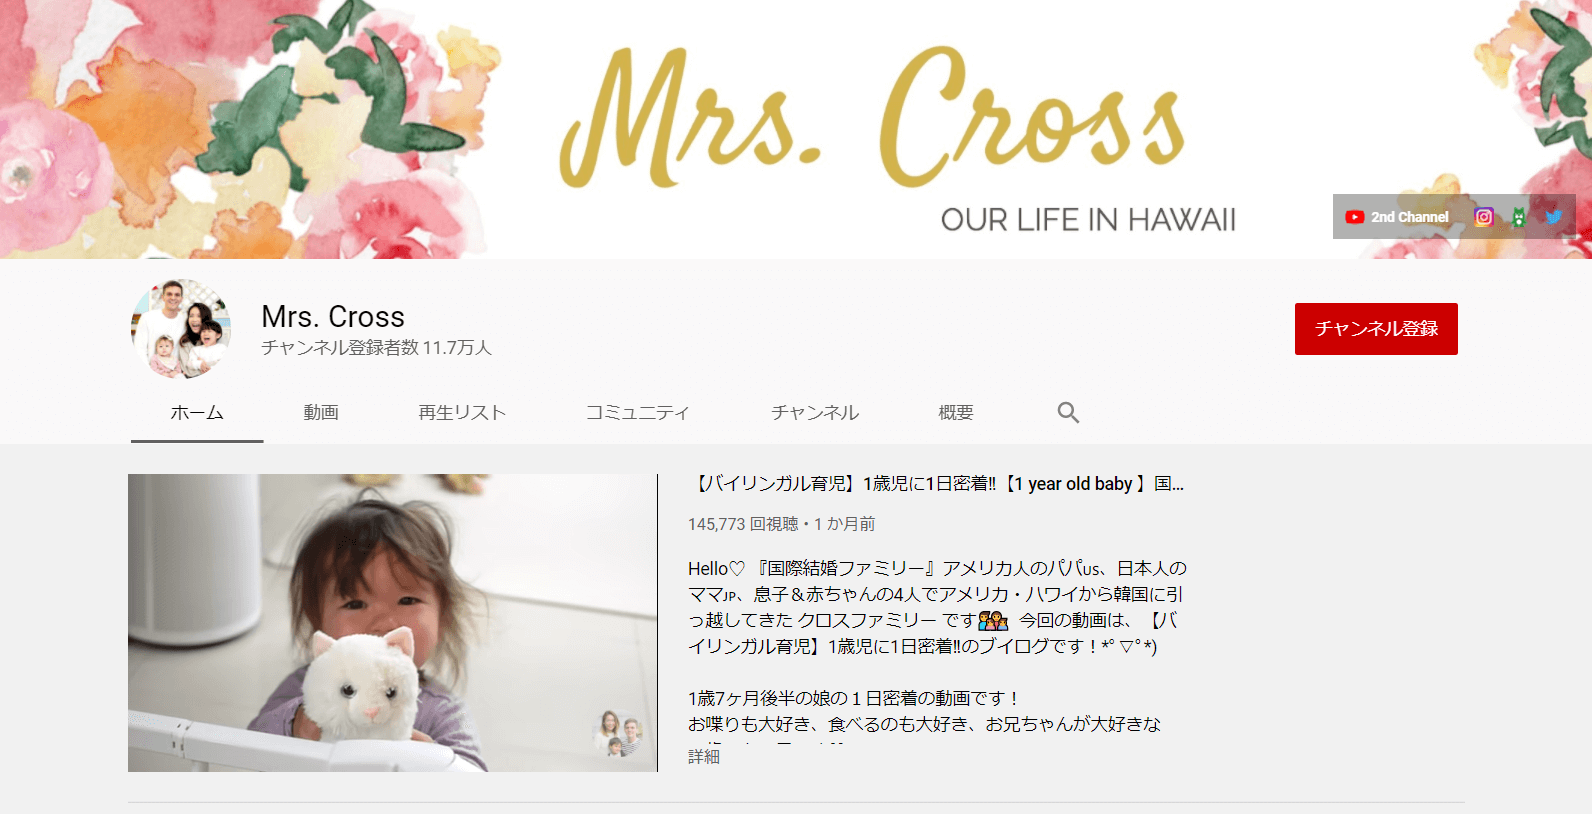 youtube-family-influencer-mrs-cross